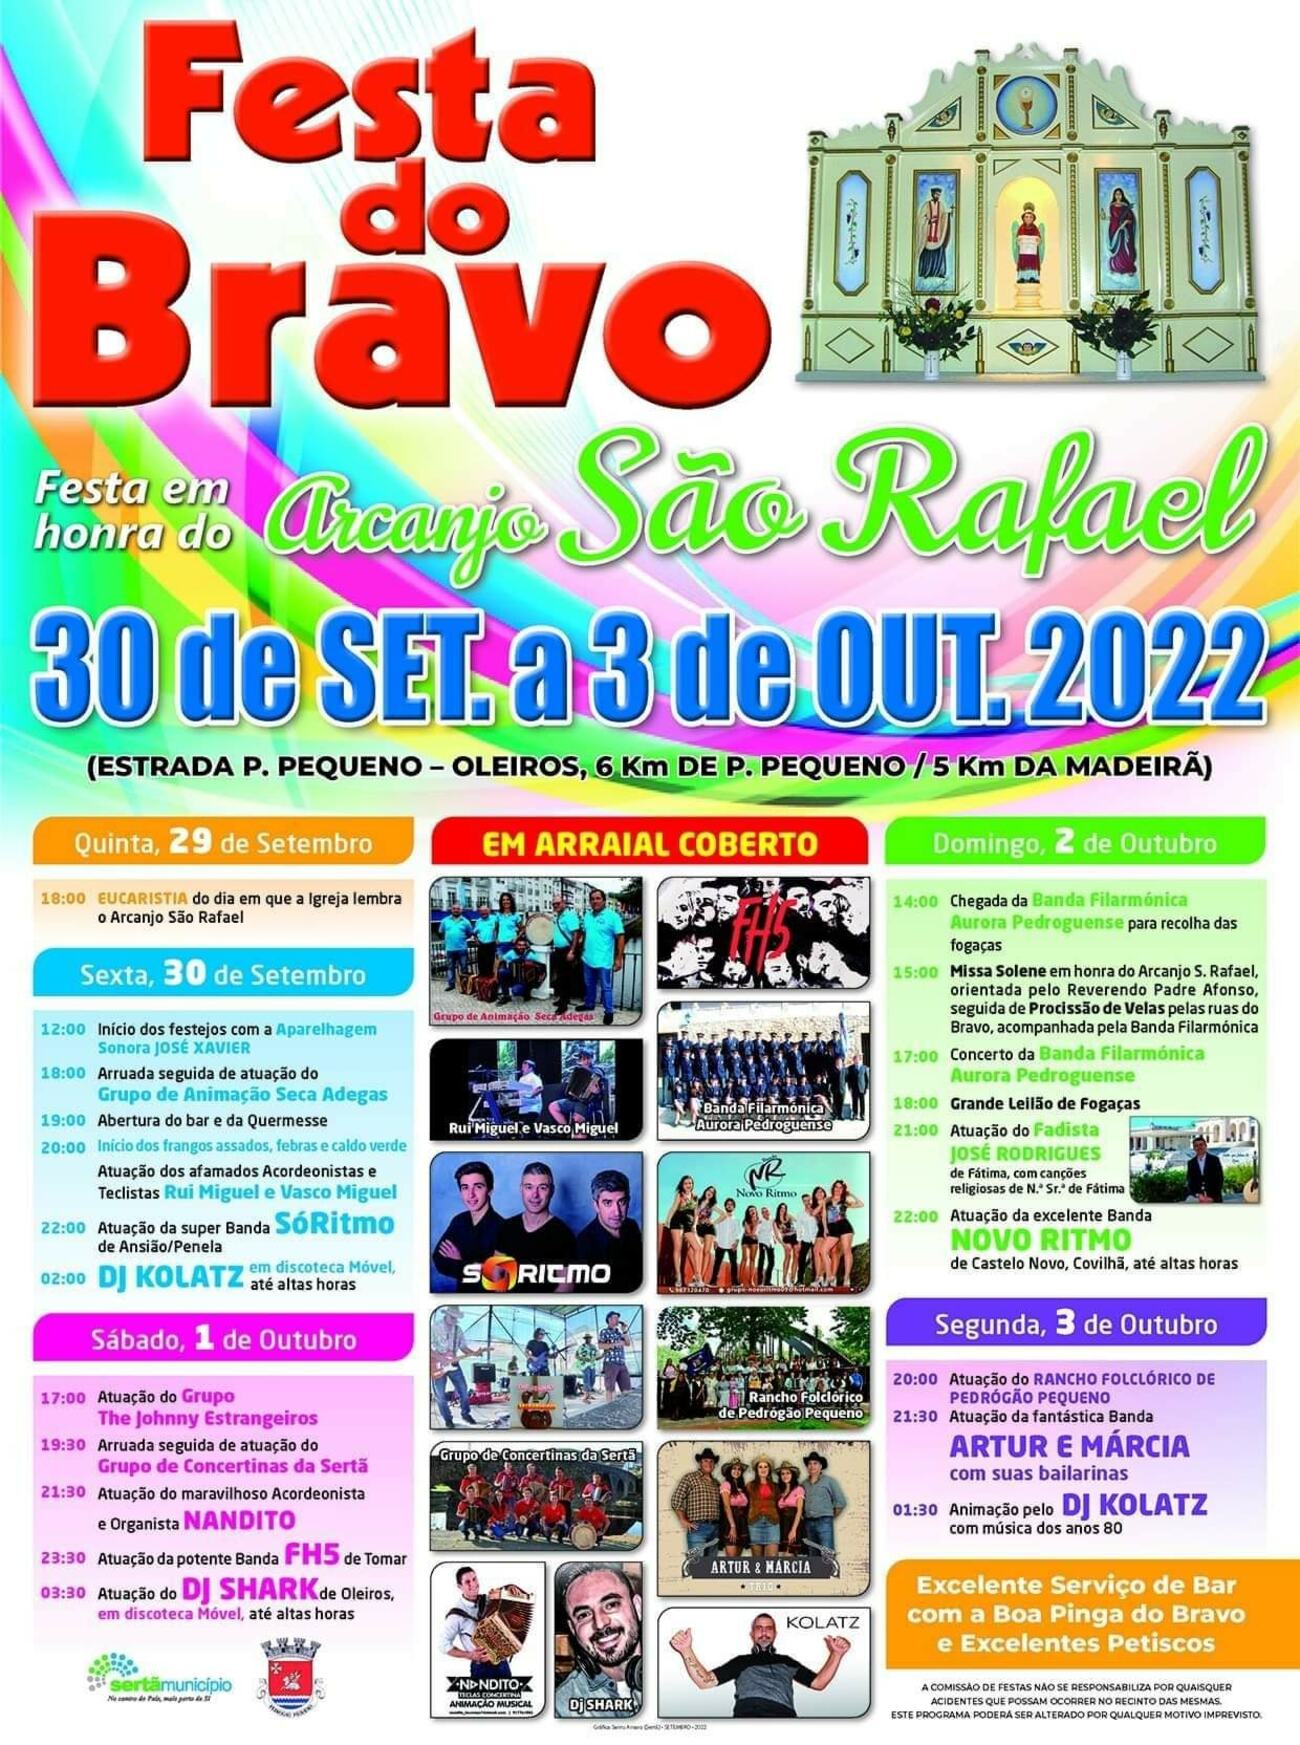 Festas Bravo 2022